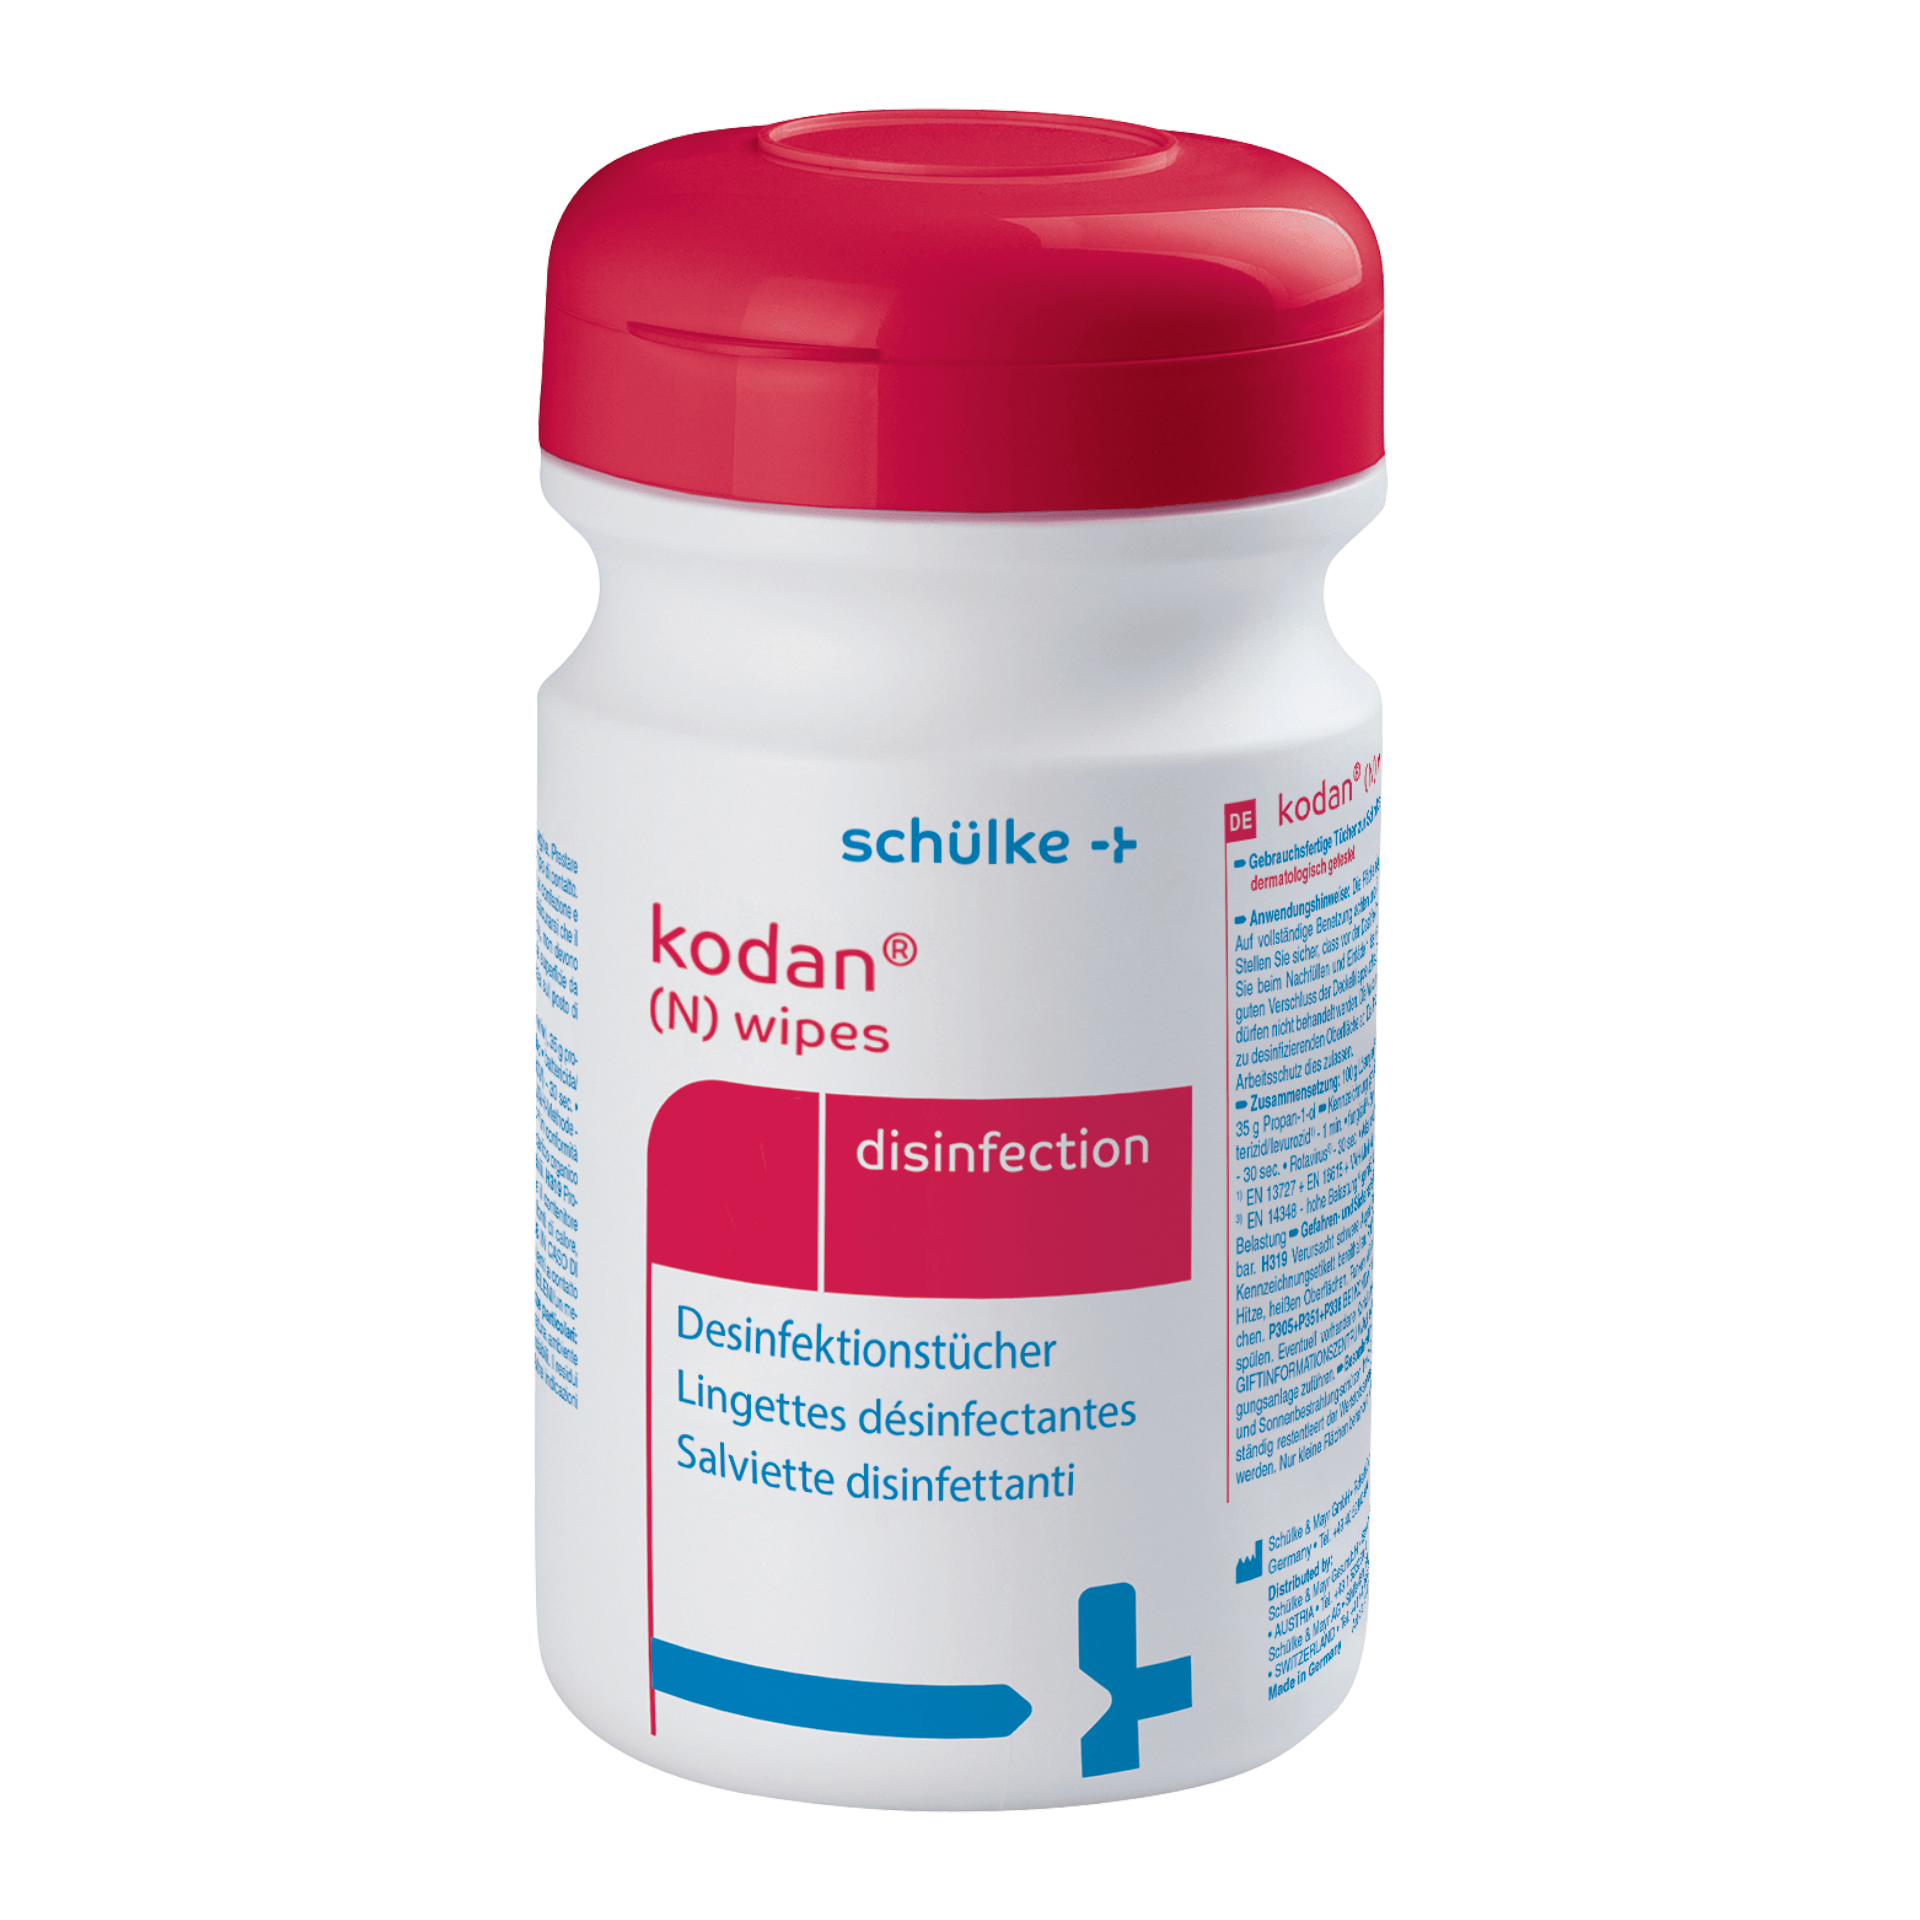 Kodan® (N) wipes